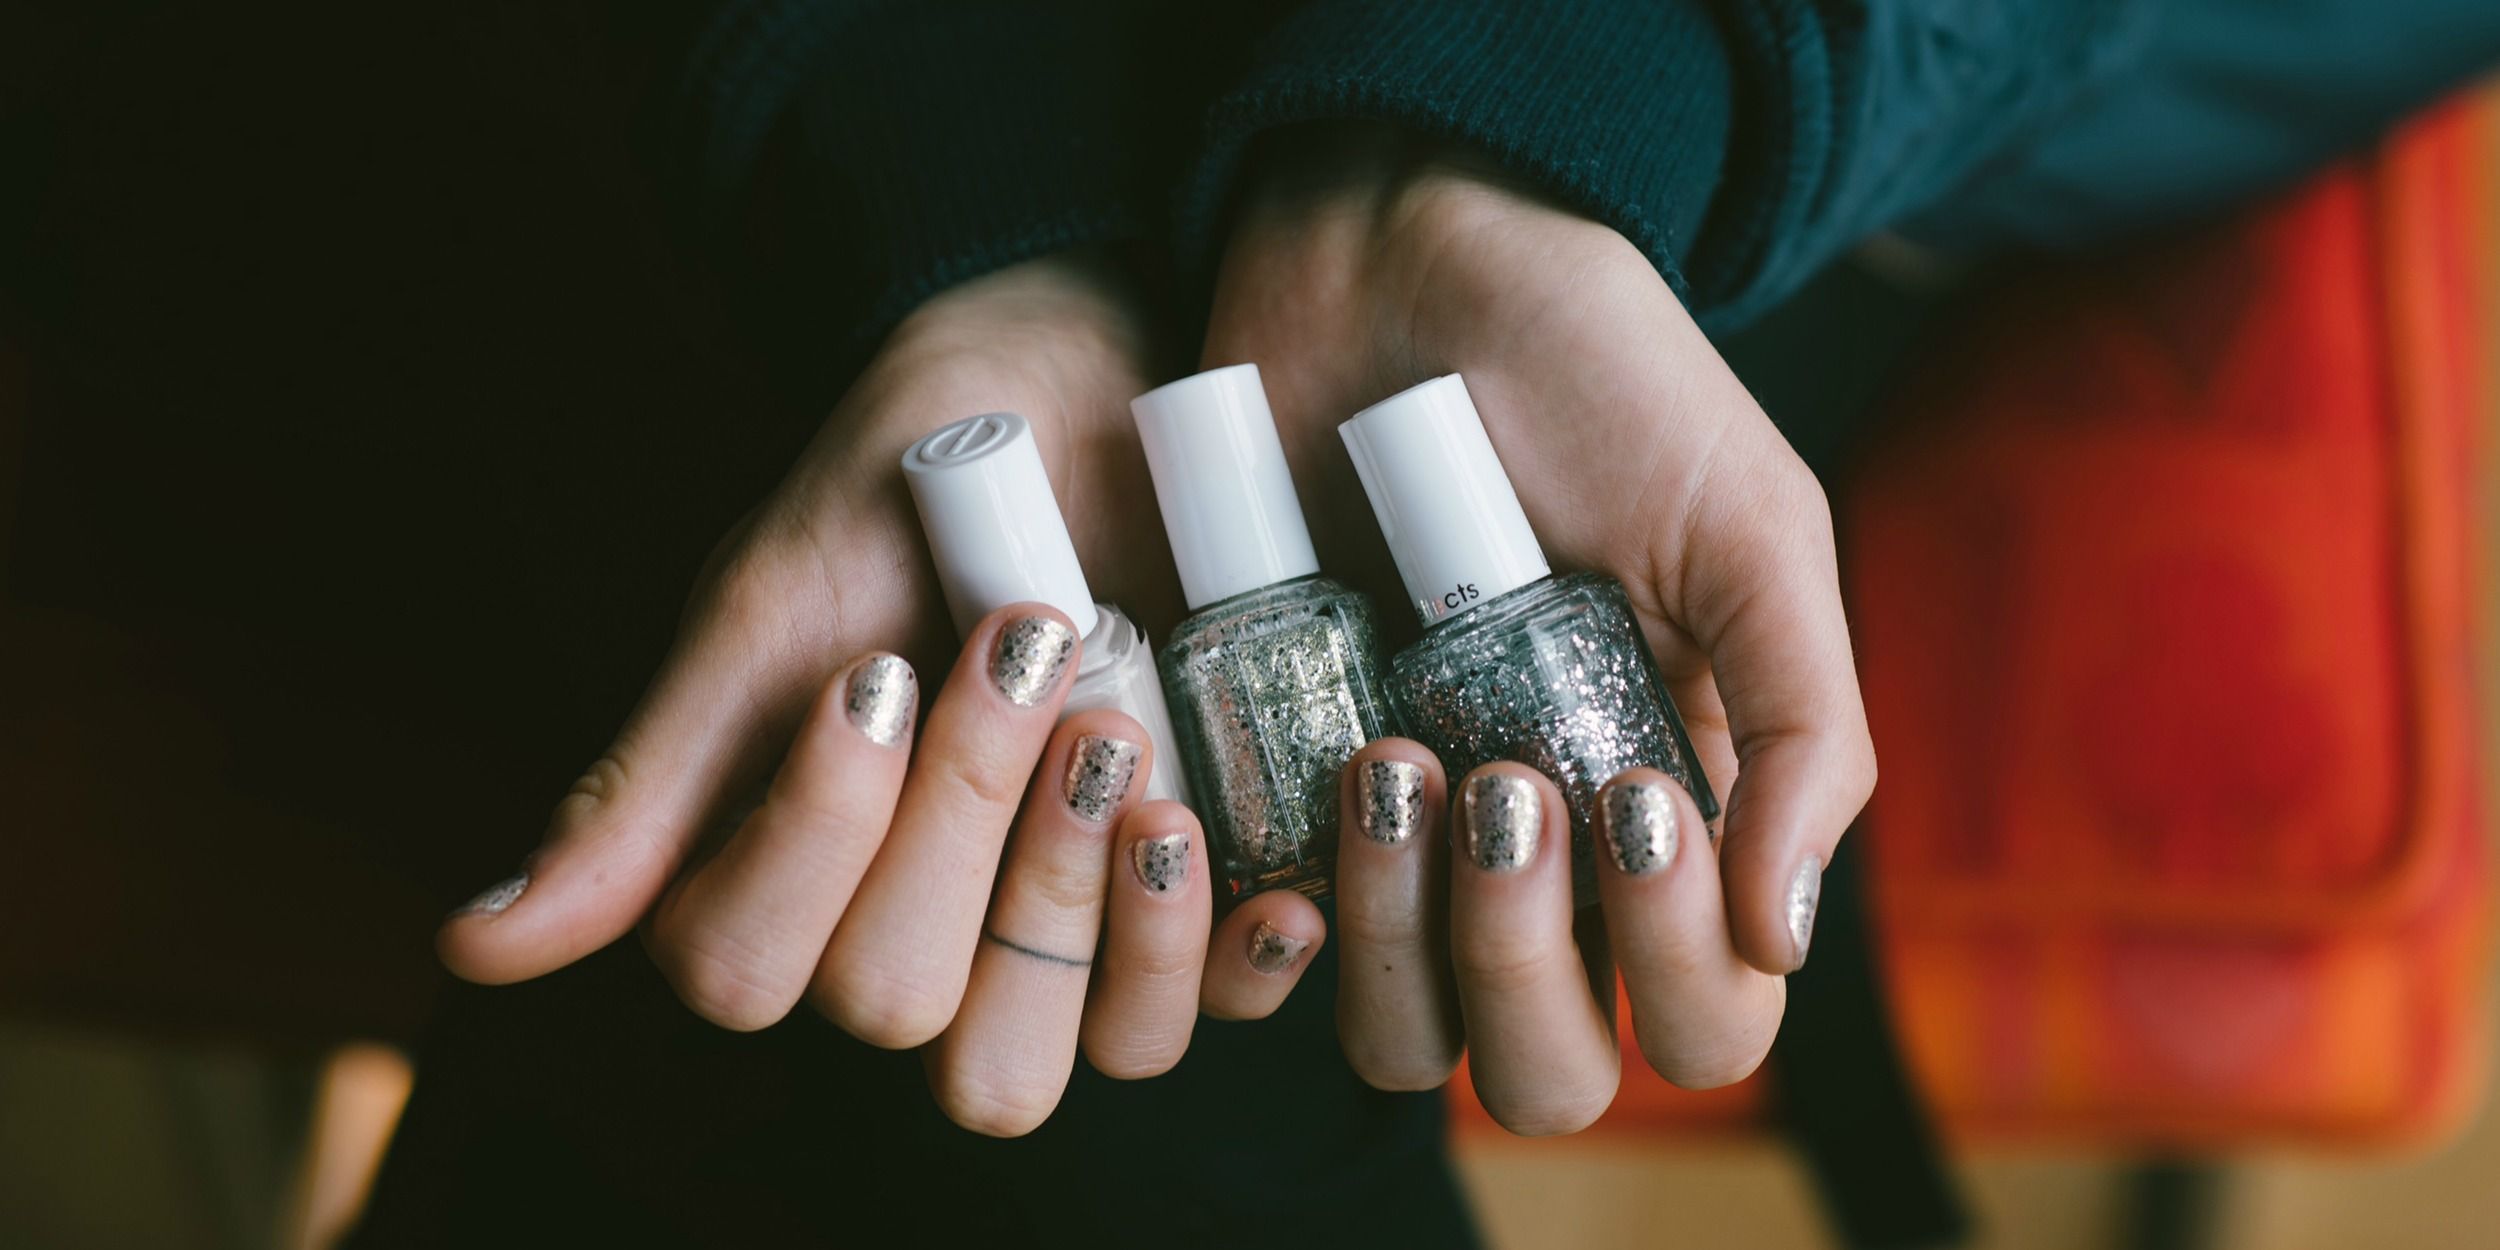 silver sparkle nails essie